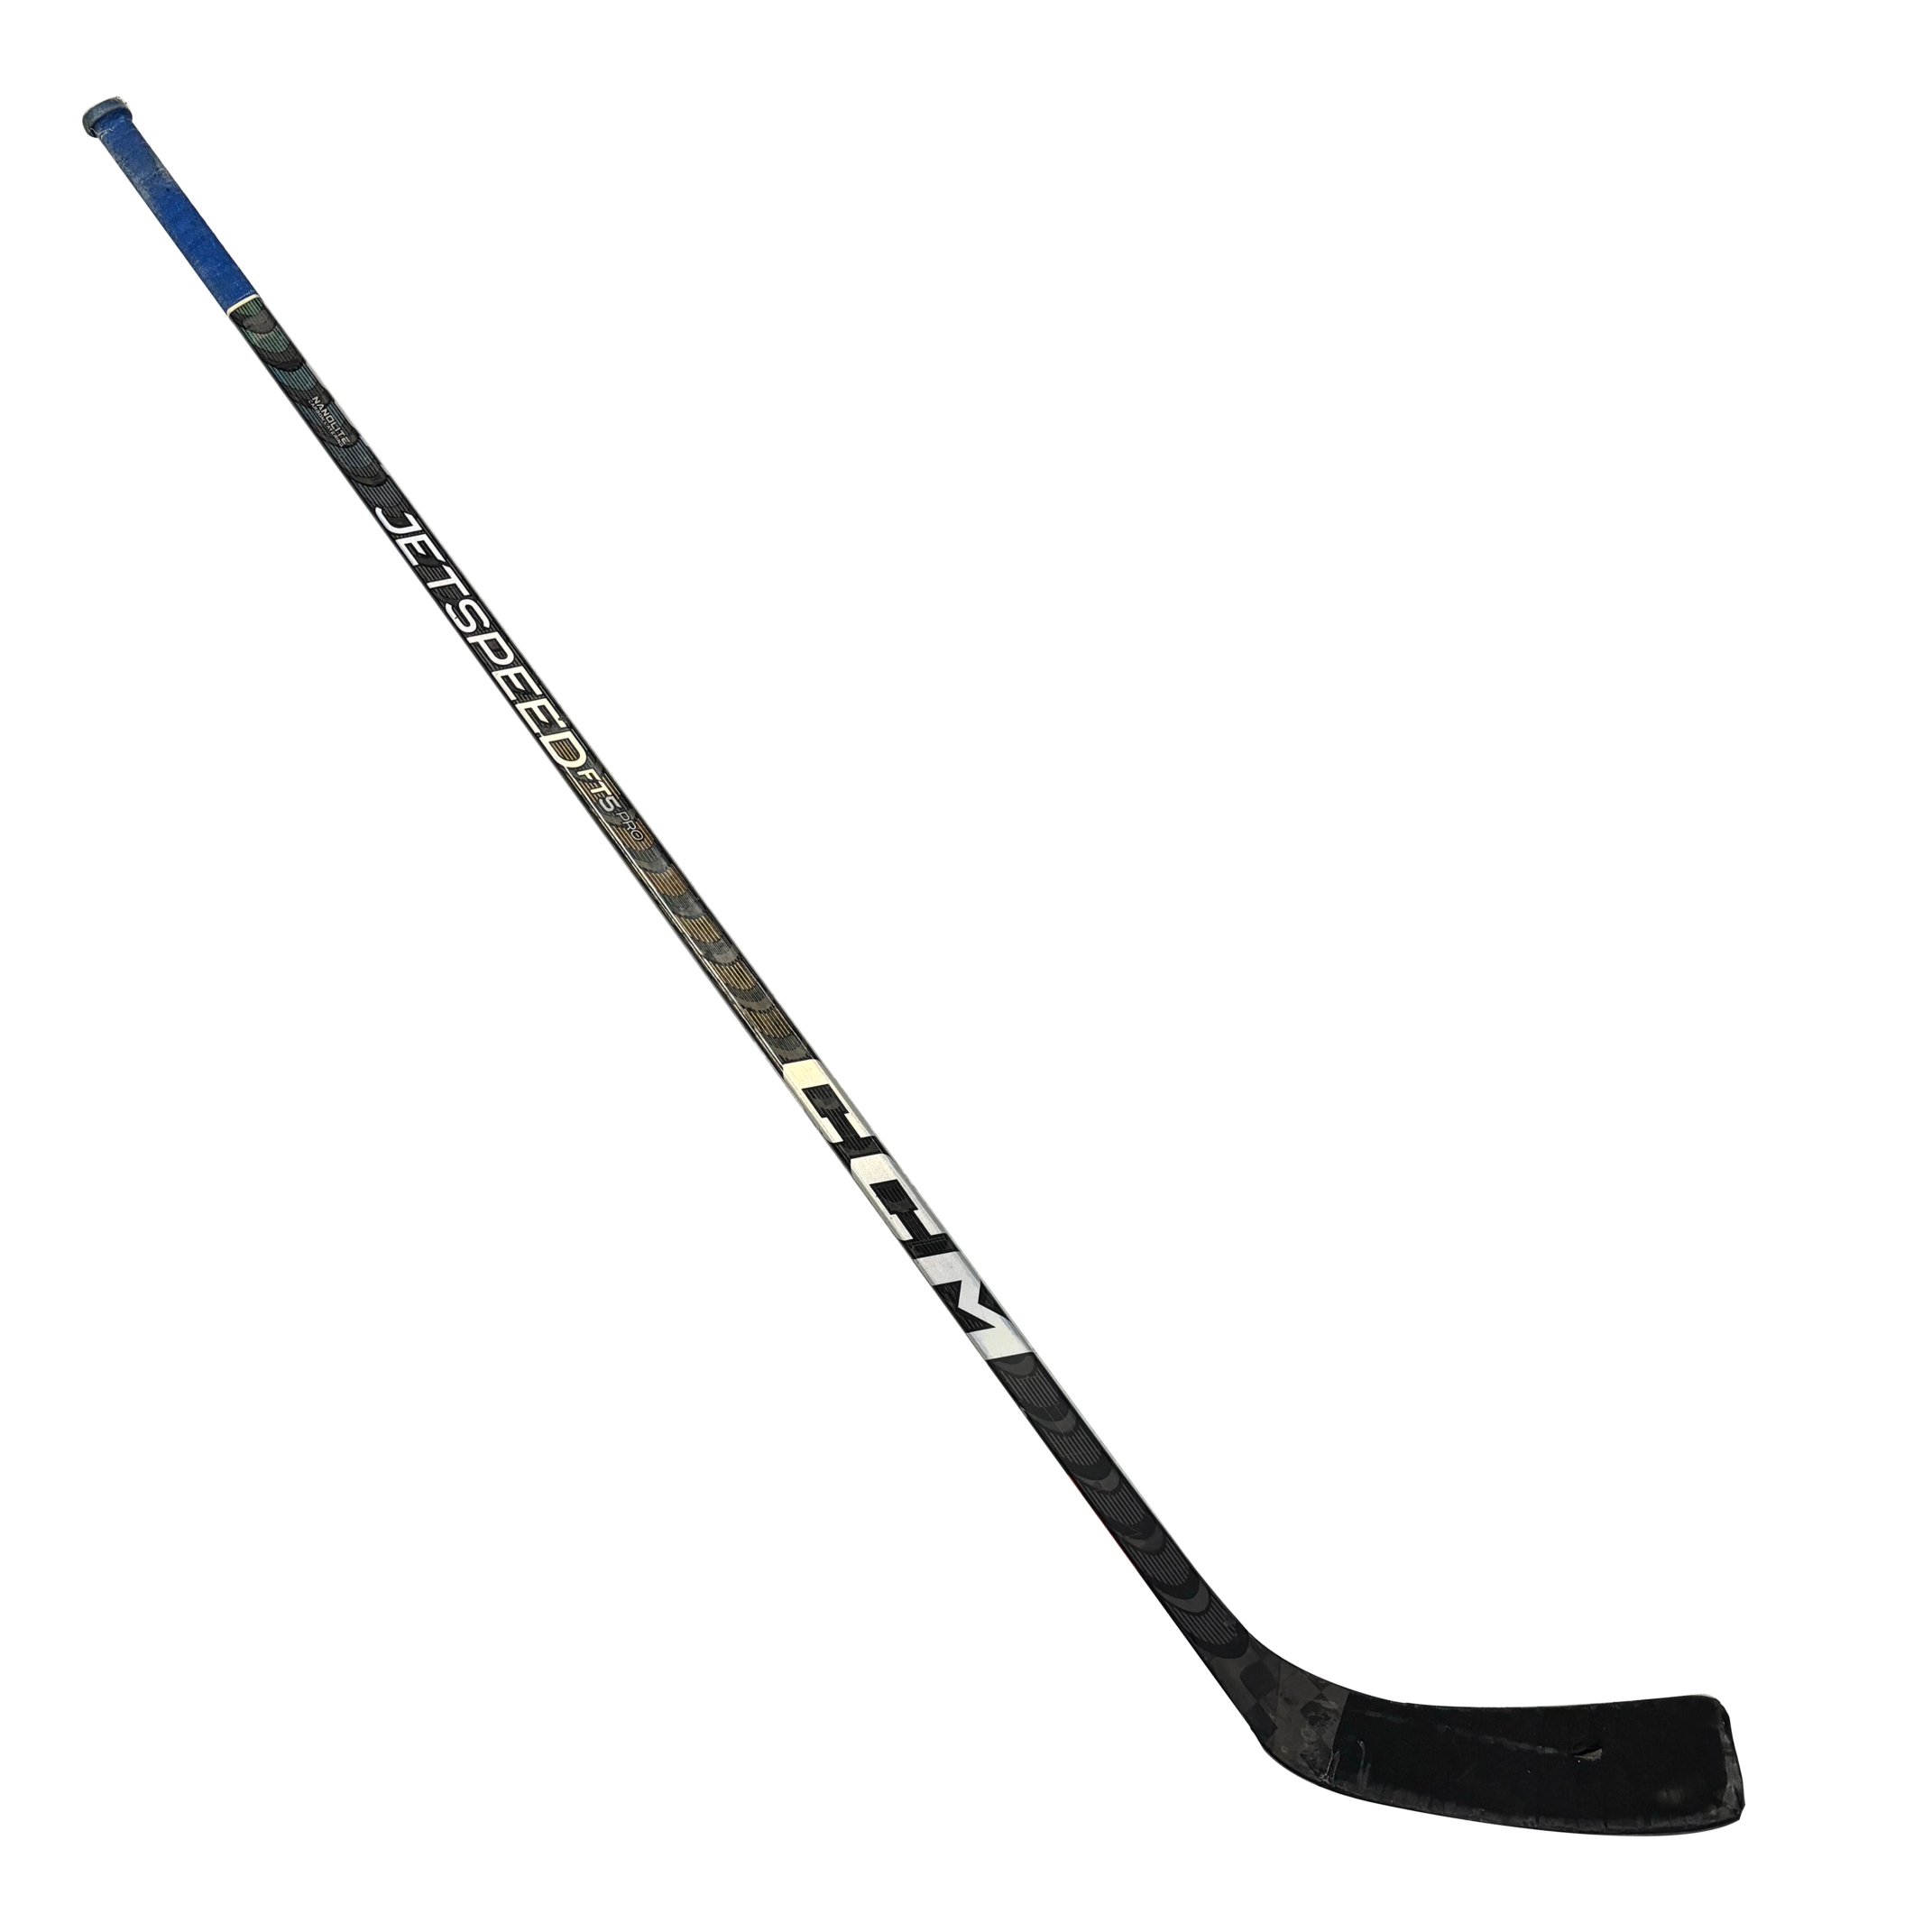 USED - CCM Jetspeed FT5 Pro - Pro Stock Hockey Stick - TB